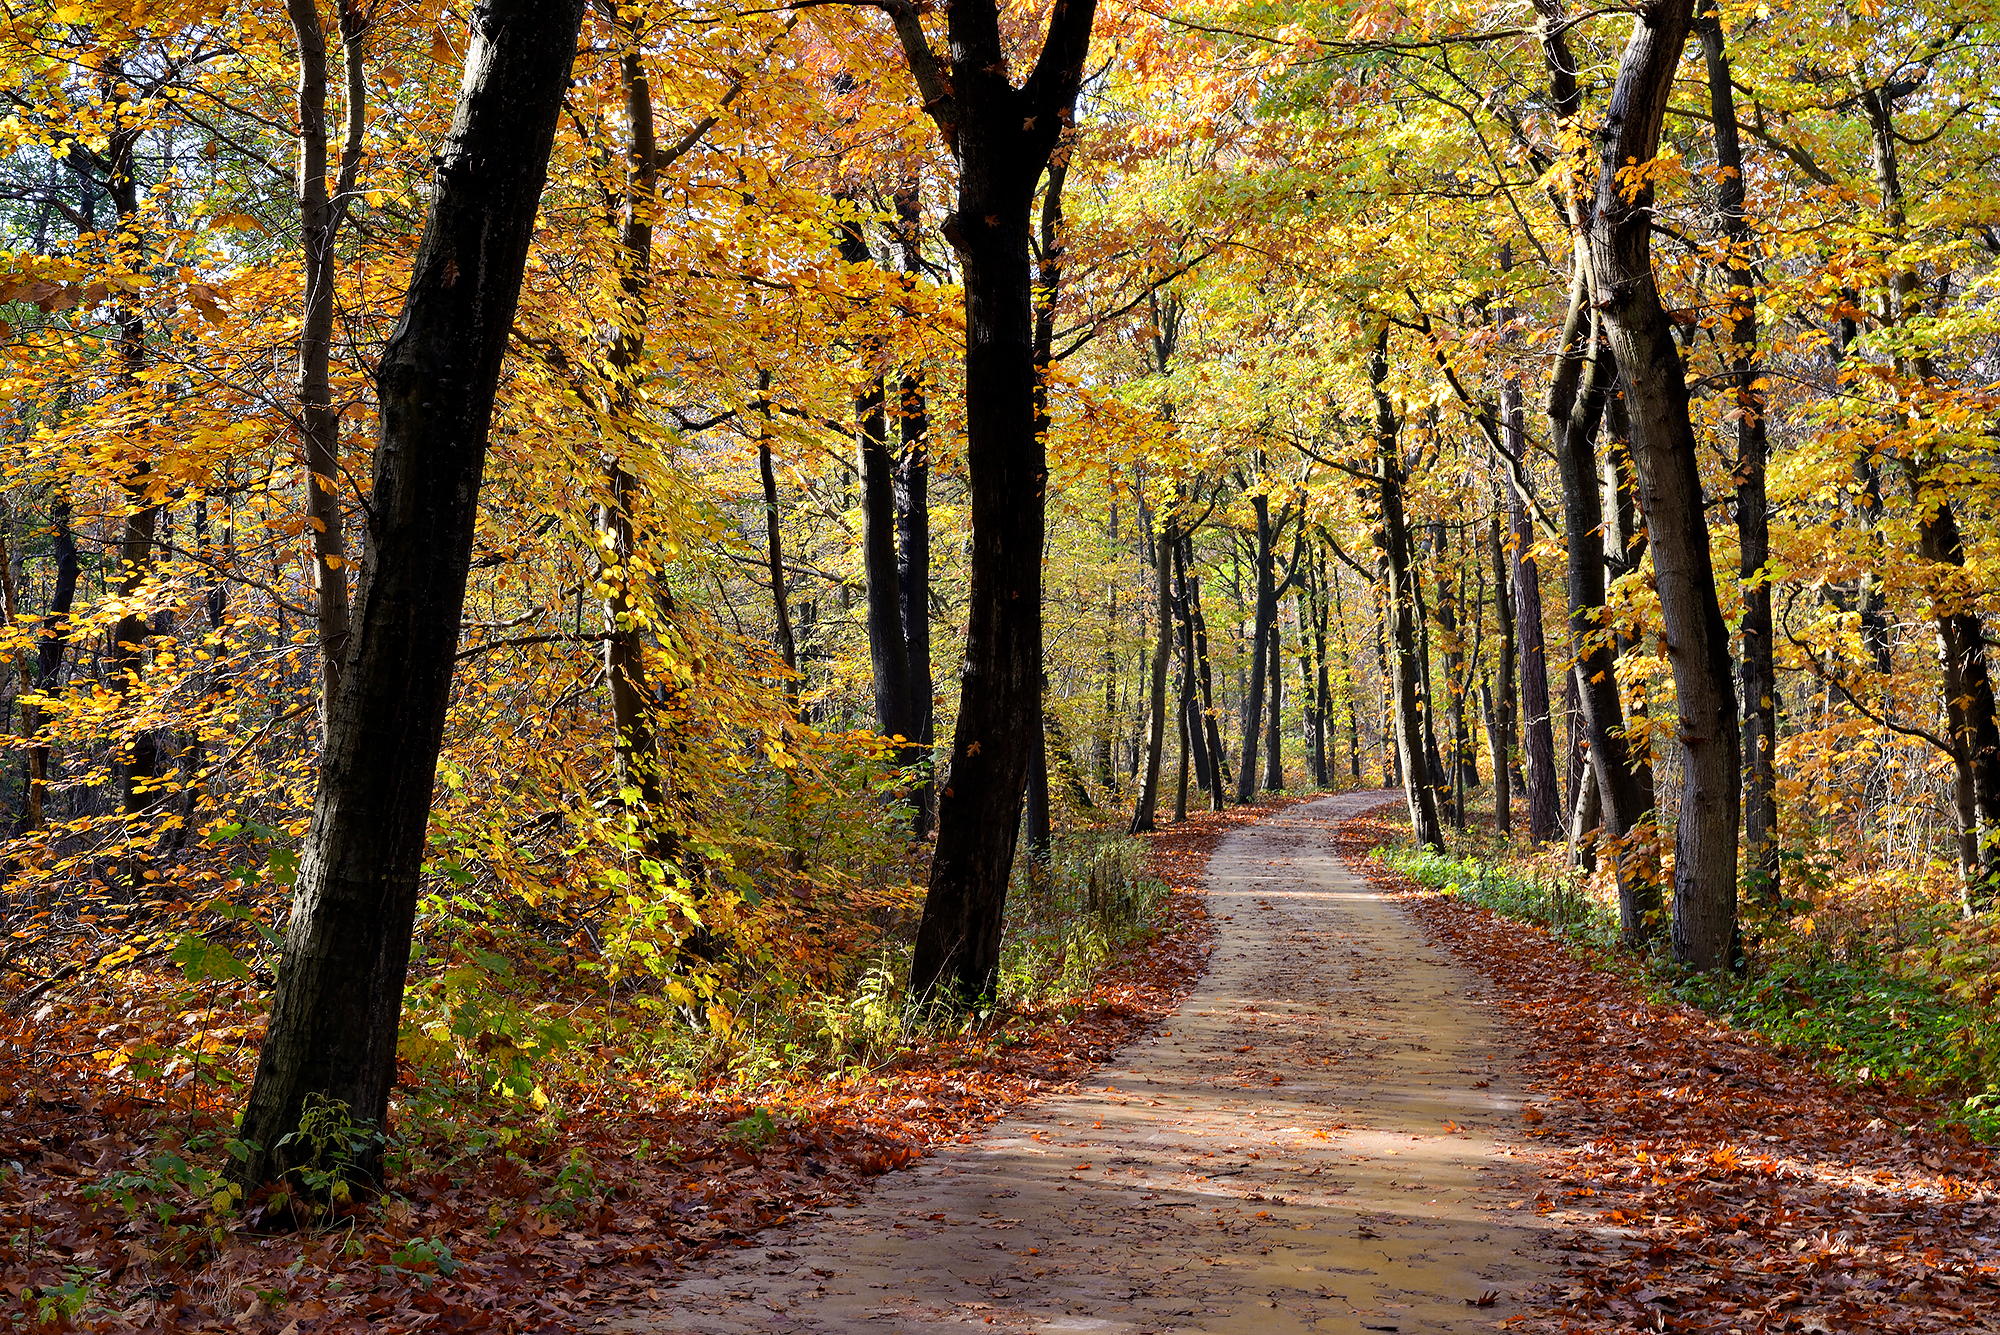 Gevallen bladeren langs slingerend fietspad met aan weerszijden boomstammen van kleurig bos tijdens herfst in de Schoorlse Duinen.